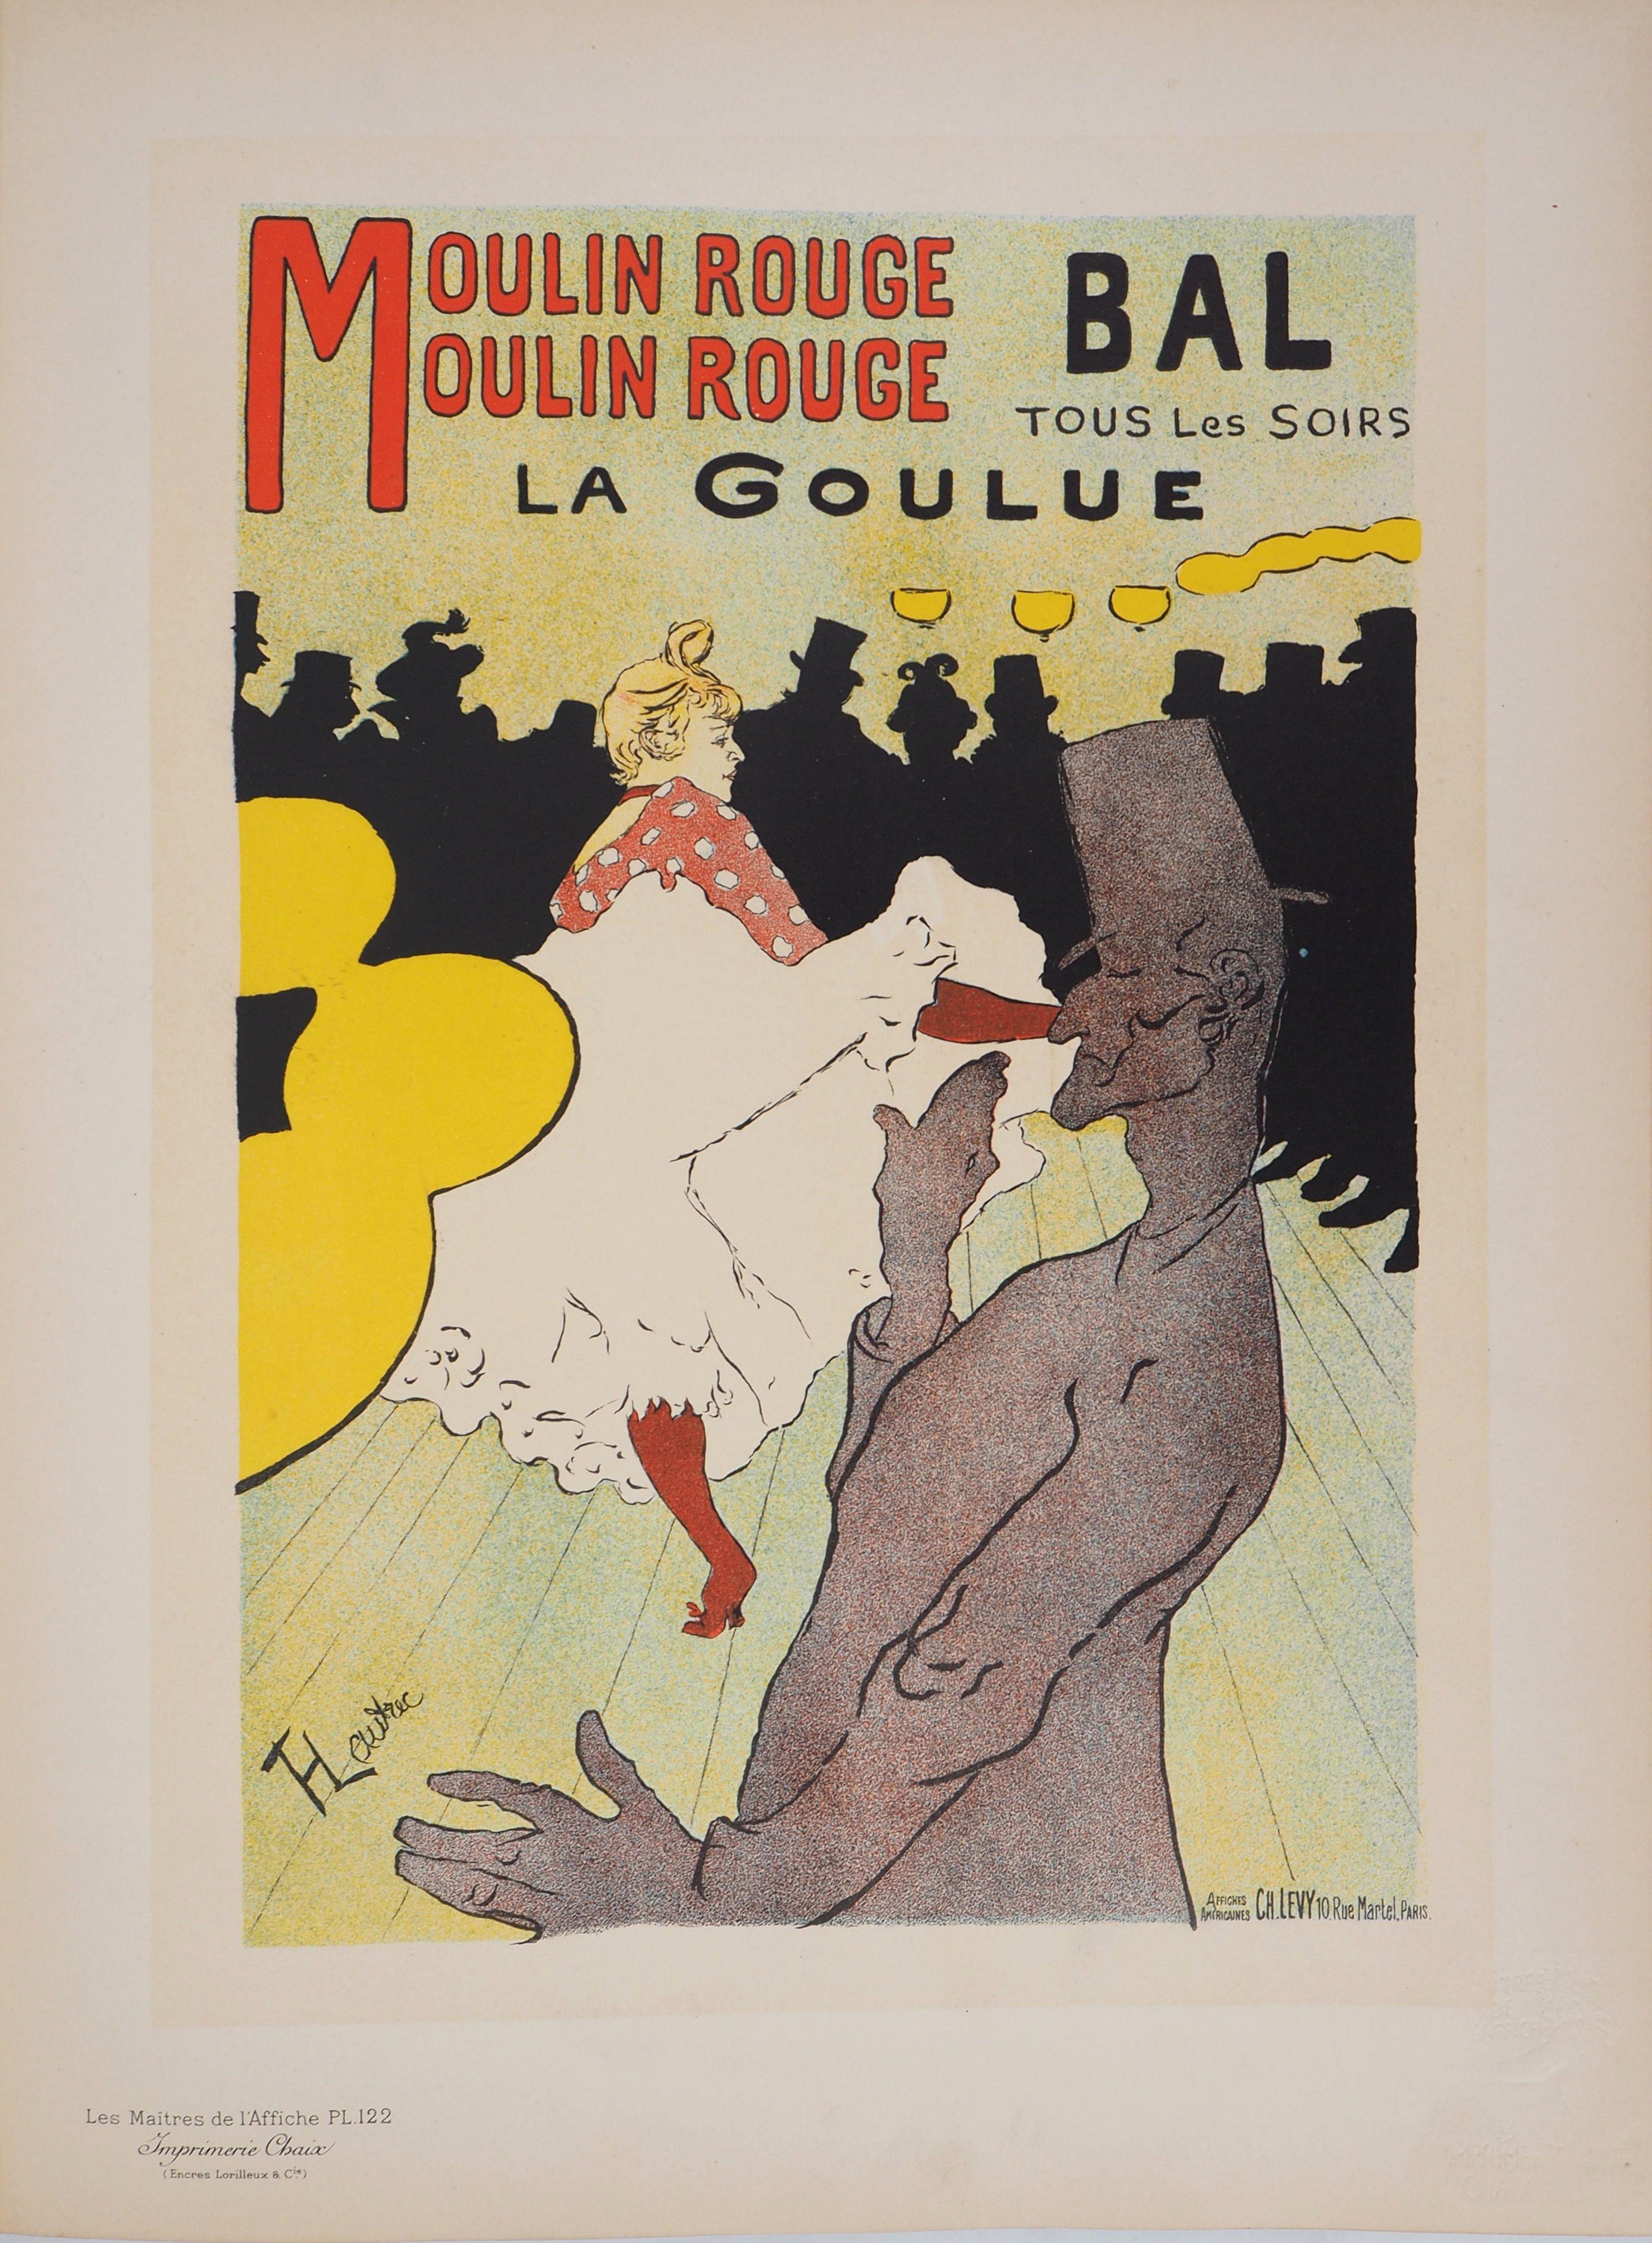 Moulin Rouge : La Goulue - Lithograph (Les Maîtres de l'Affiche), 1897 - Print by Henri de Toulouse-Lautrec